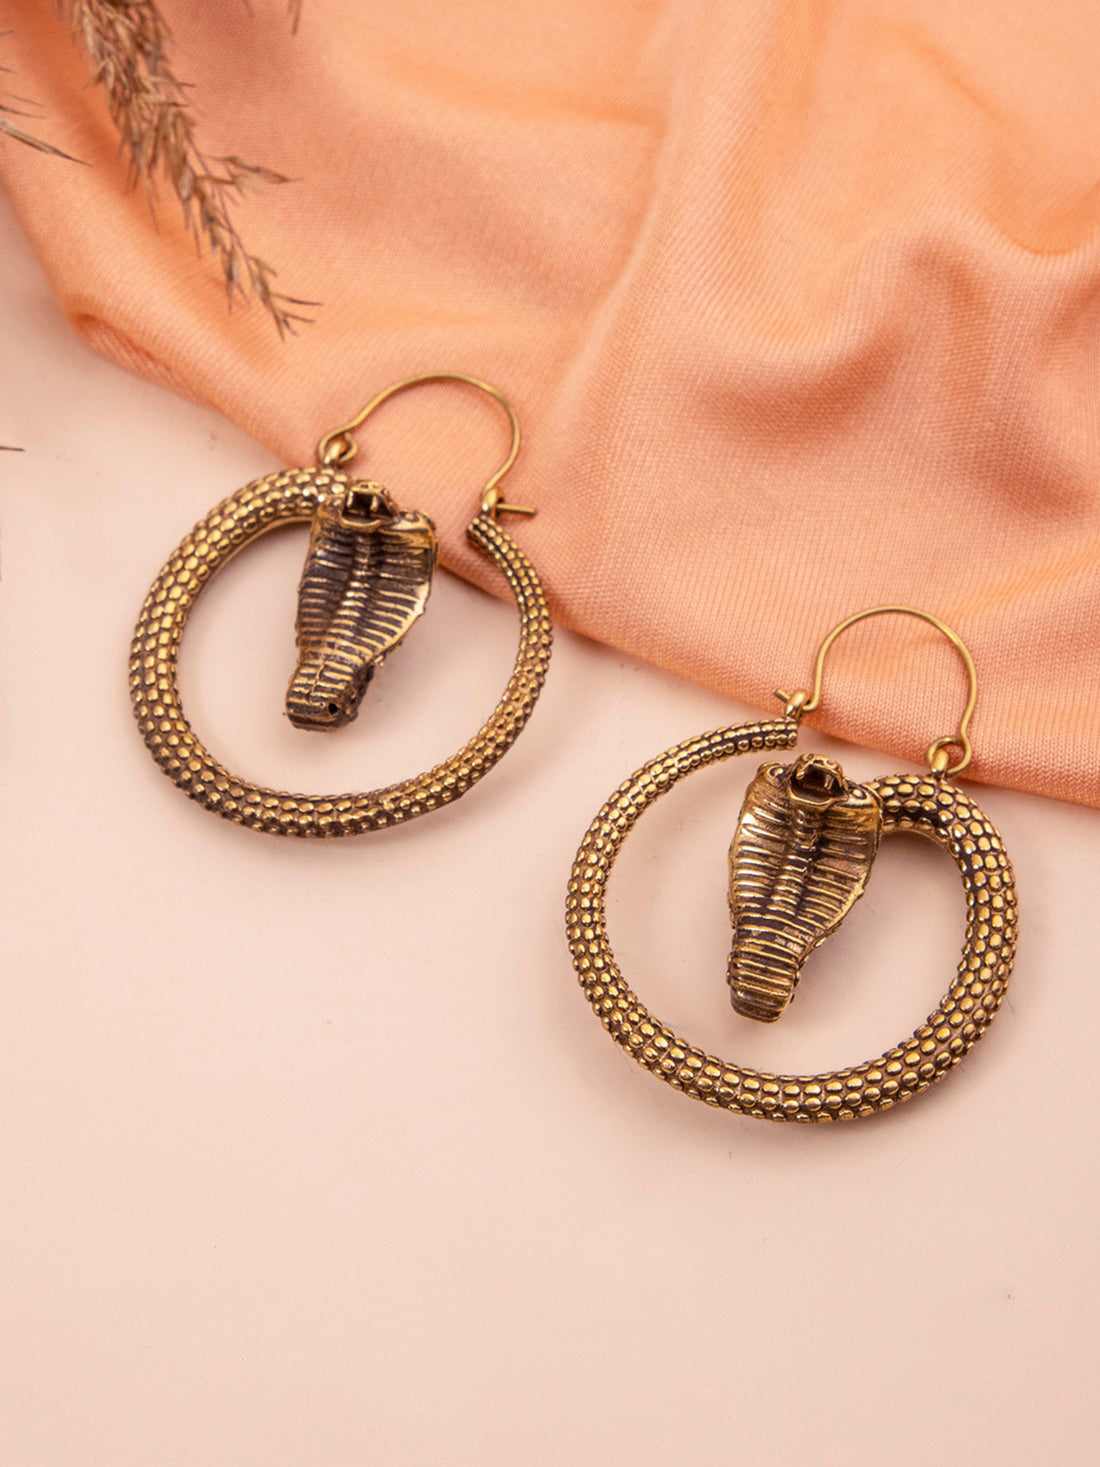 Party Wear Hoops Earrings - Western Gold-Plated Brass Earrings By Studio One Love